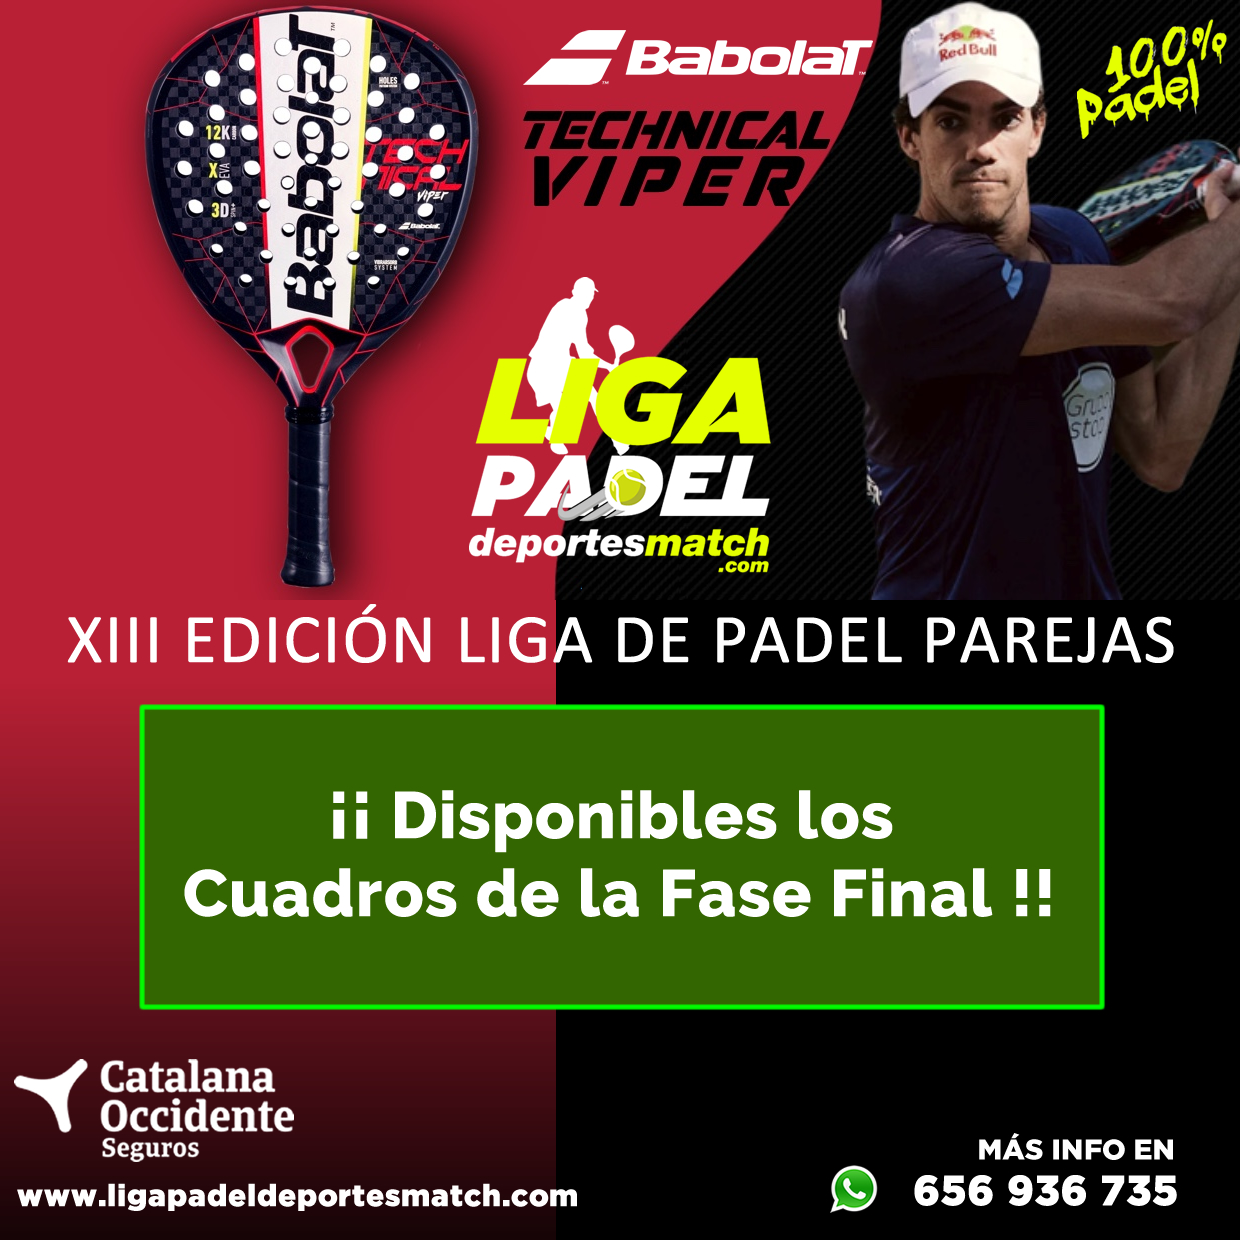 XIII Edición Liga de Padel Deportes Match por Parejas